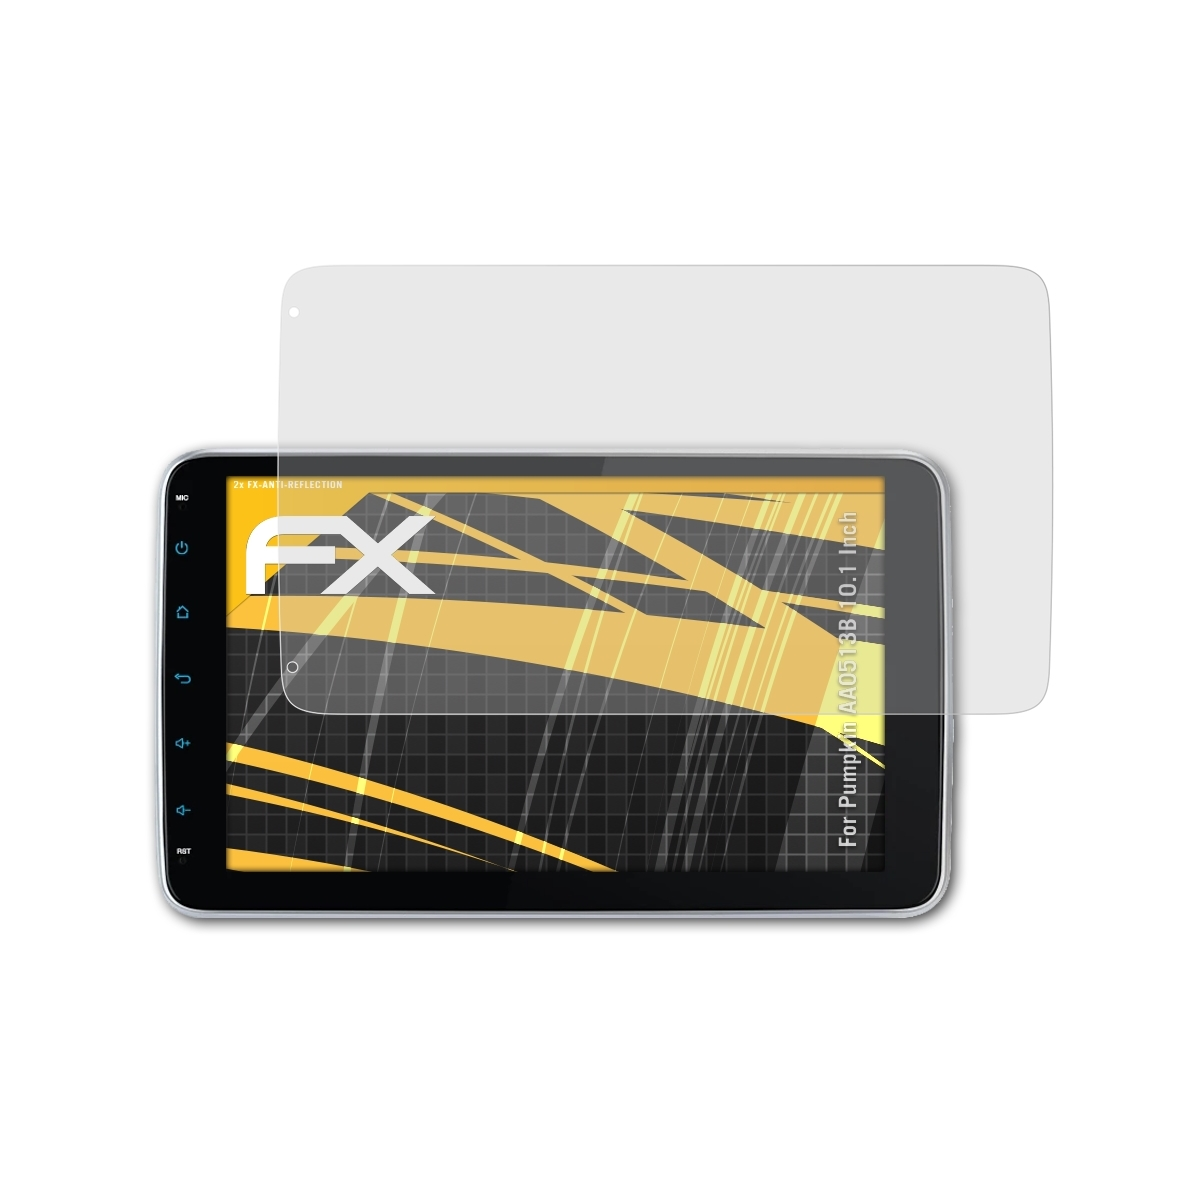 ATFOLIX 2x FX-Antireflex Displayschutz(für Pumpkin AA0513B (10.1 Inch))